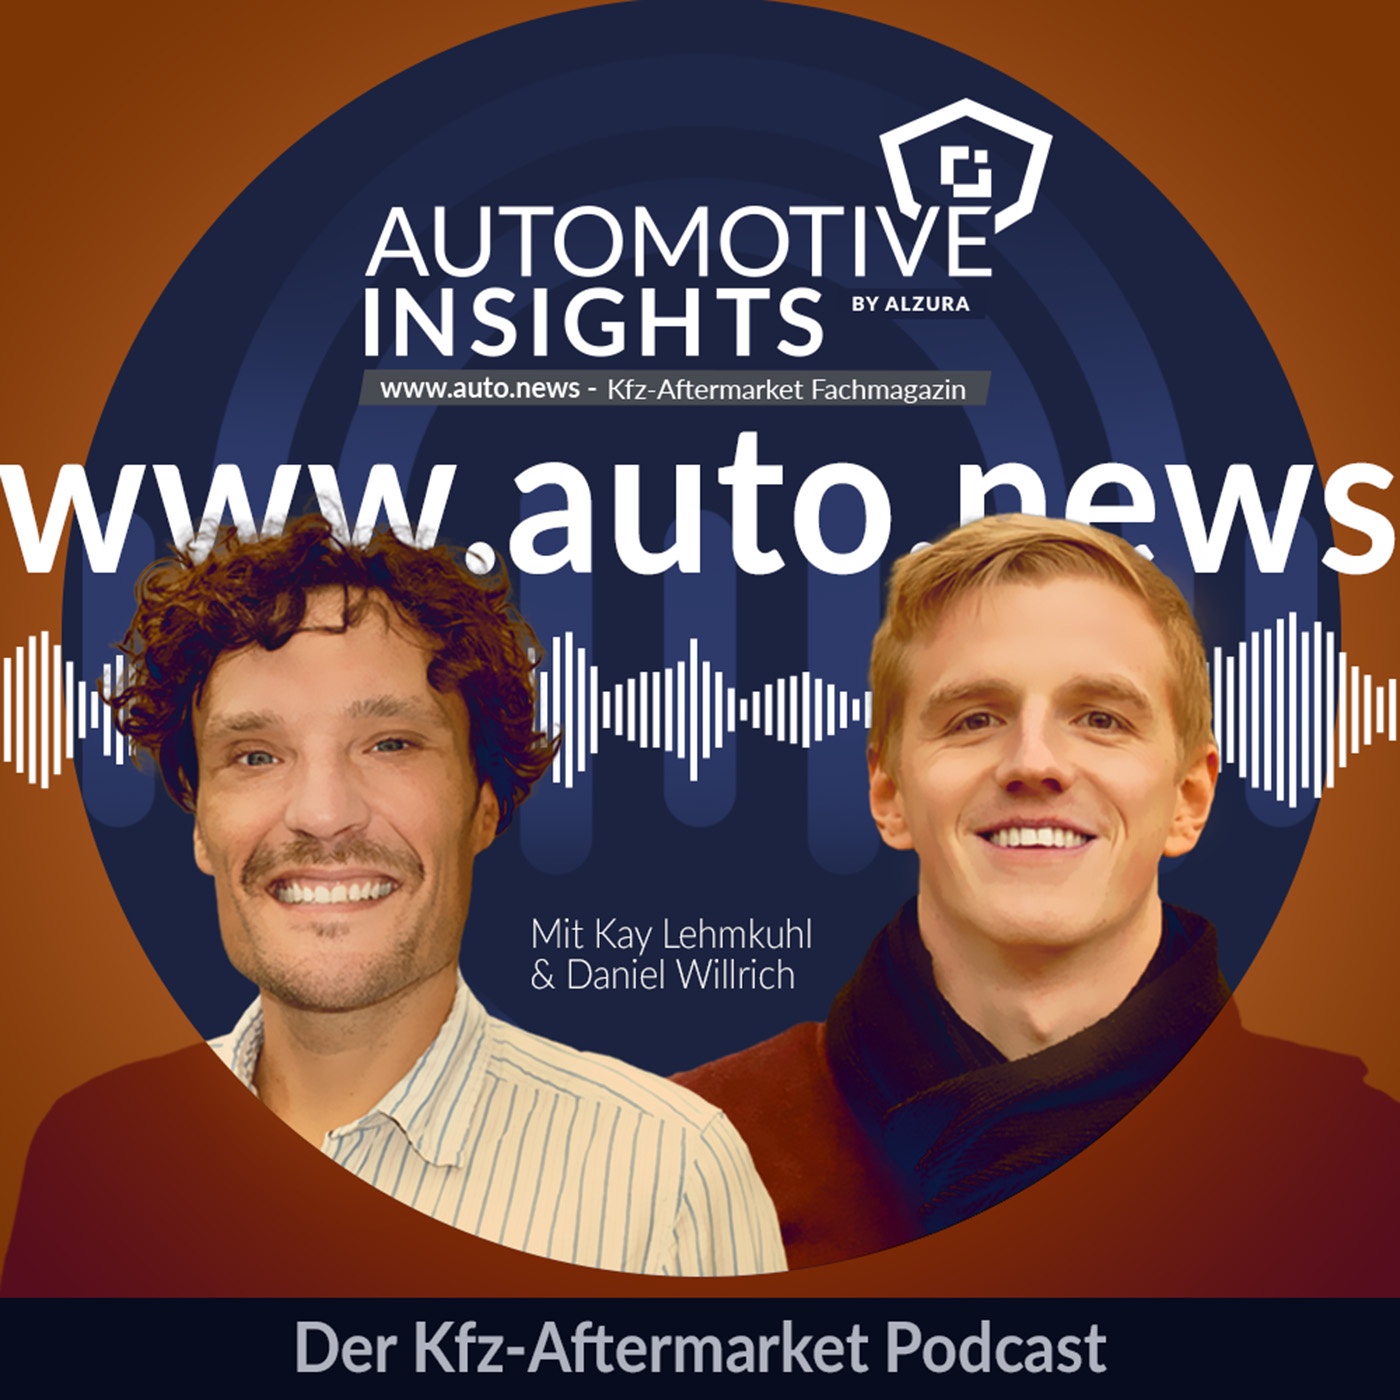 Automotive Insights Magazin - www.auto.news